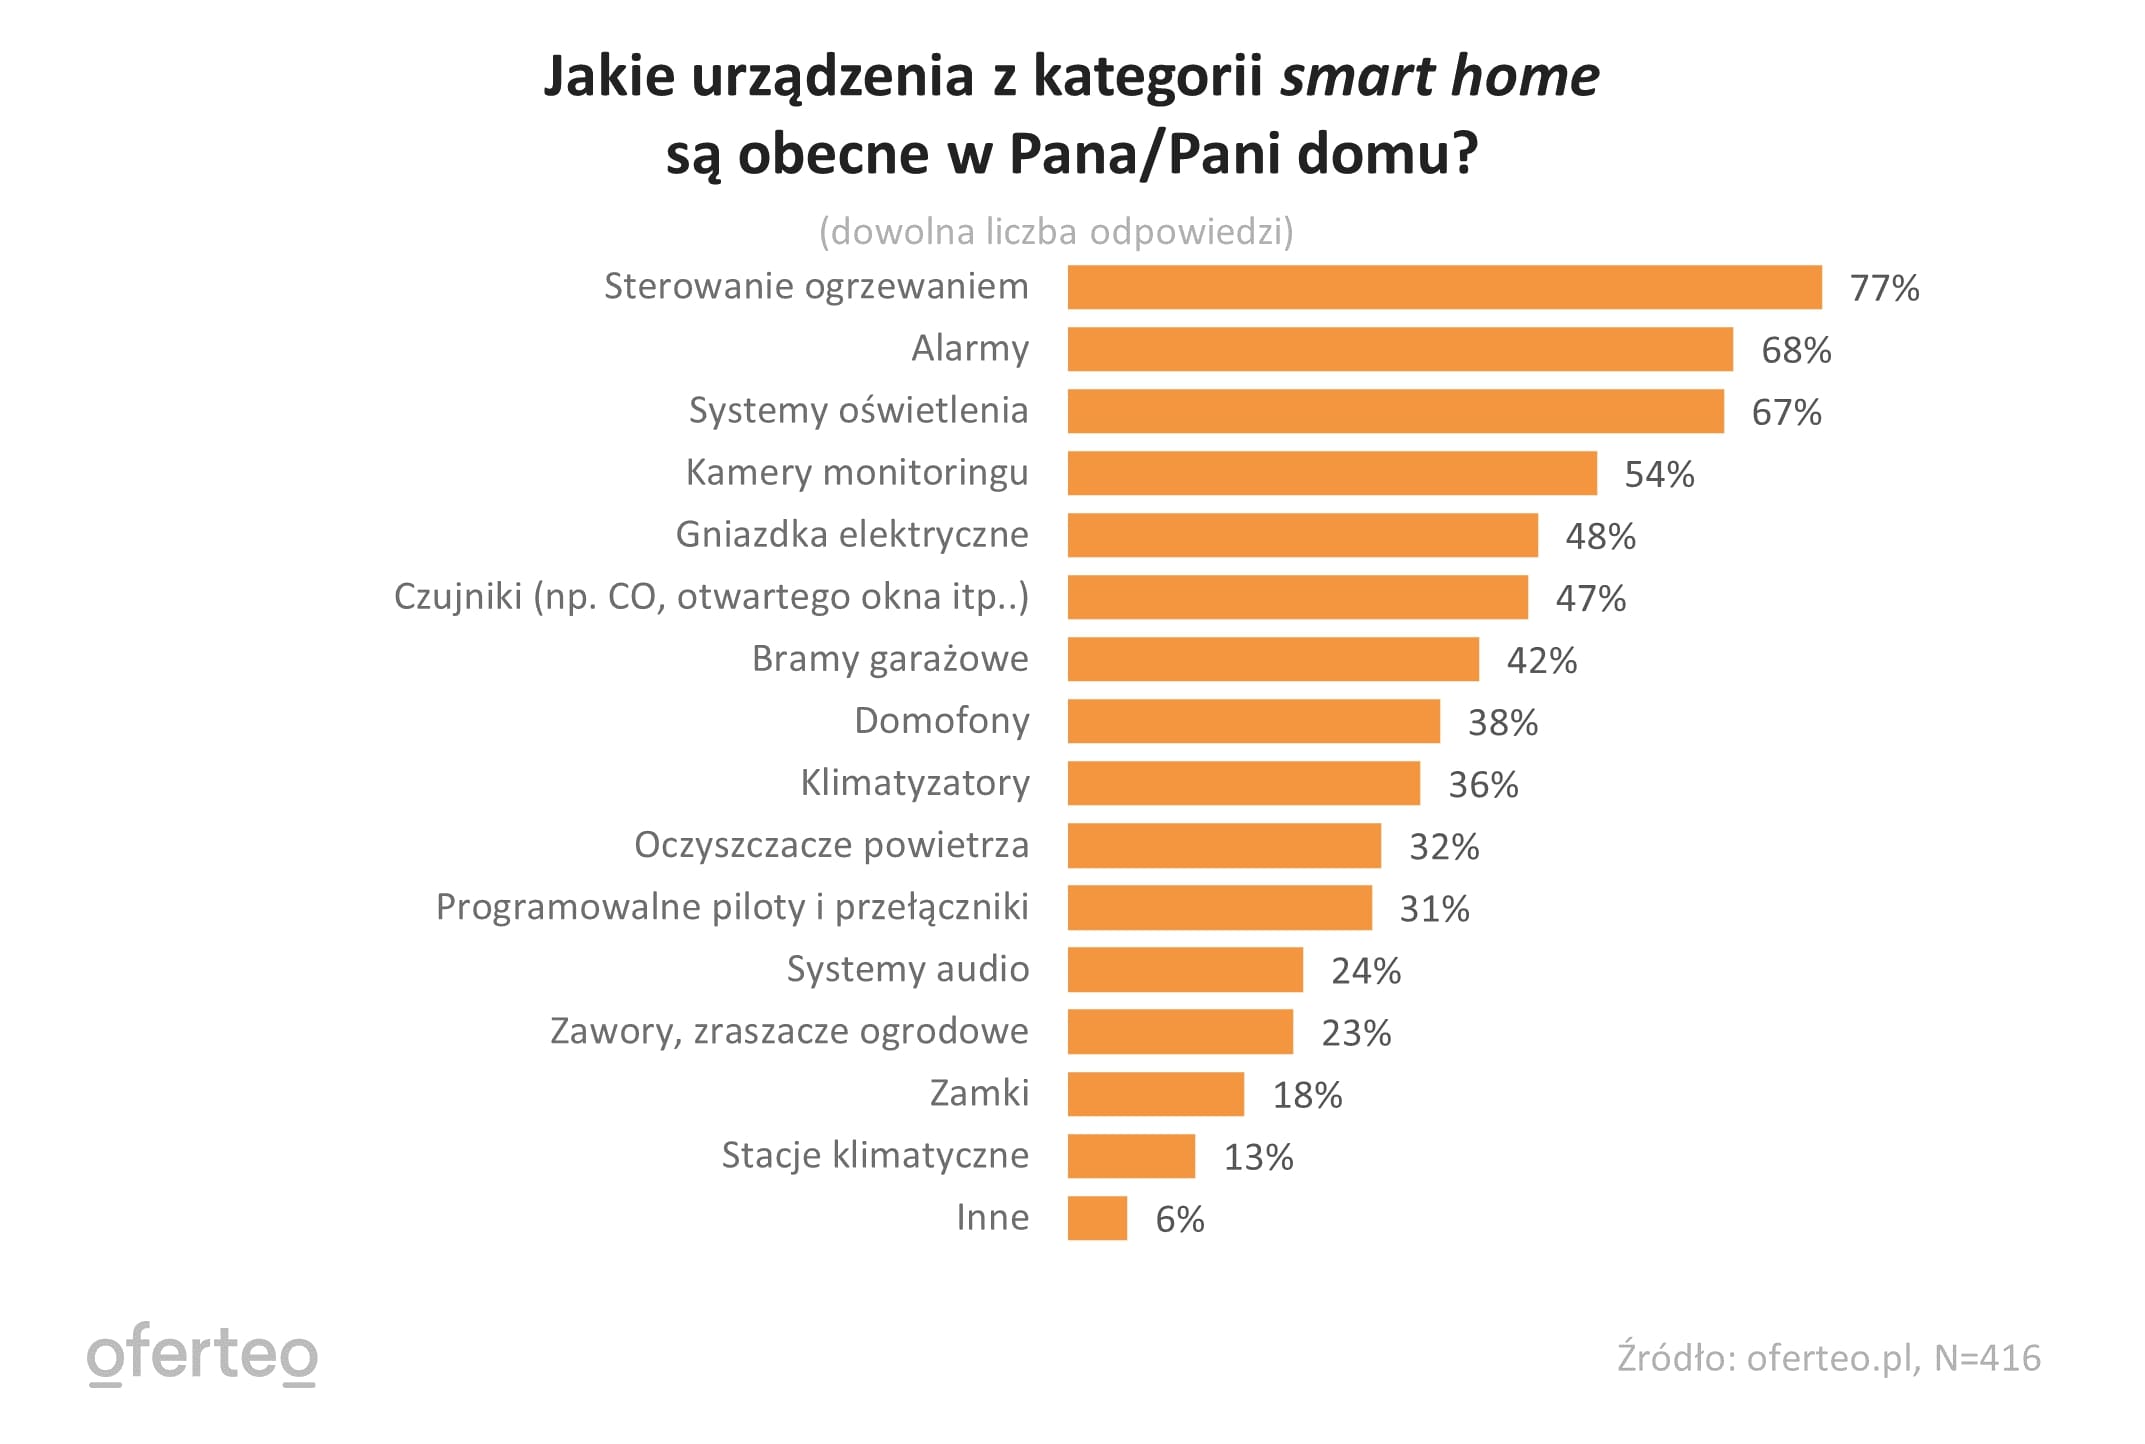 Wykres przedstawiający rodzaj urządzeń z kategorii smart home obecnych w domu respondentów